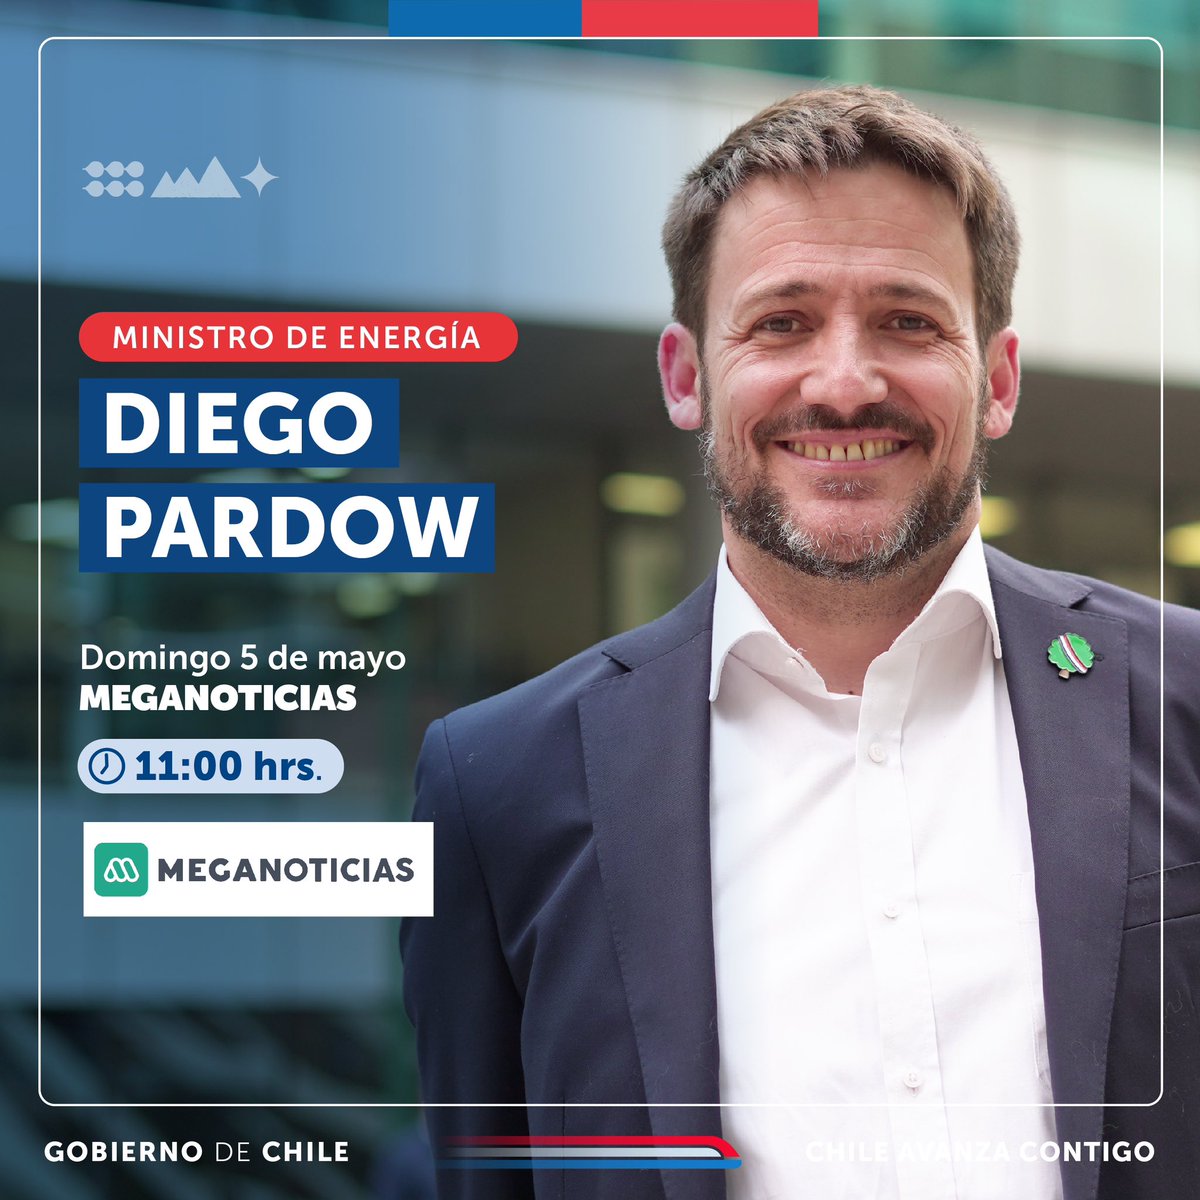 Hoy el ministro @DiegoPardow estará desde las 11:00 horas en @meganoticiascl conversando sobre el #PlanHidrógenoVerde y mucho más. ¡No te lo pierdas! 🍃⚡️